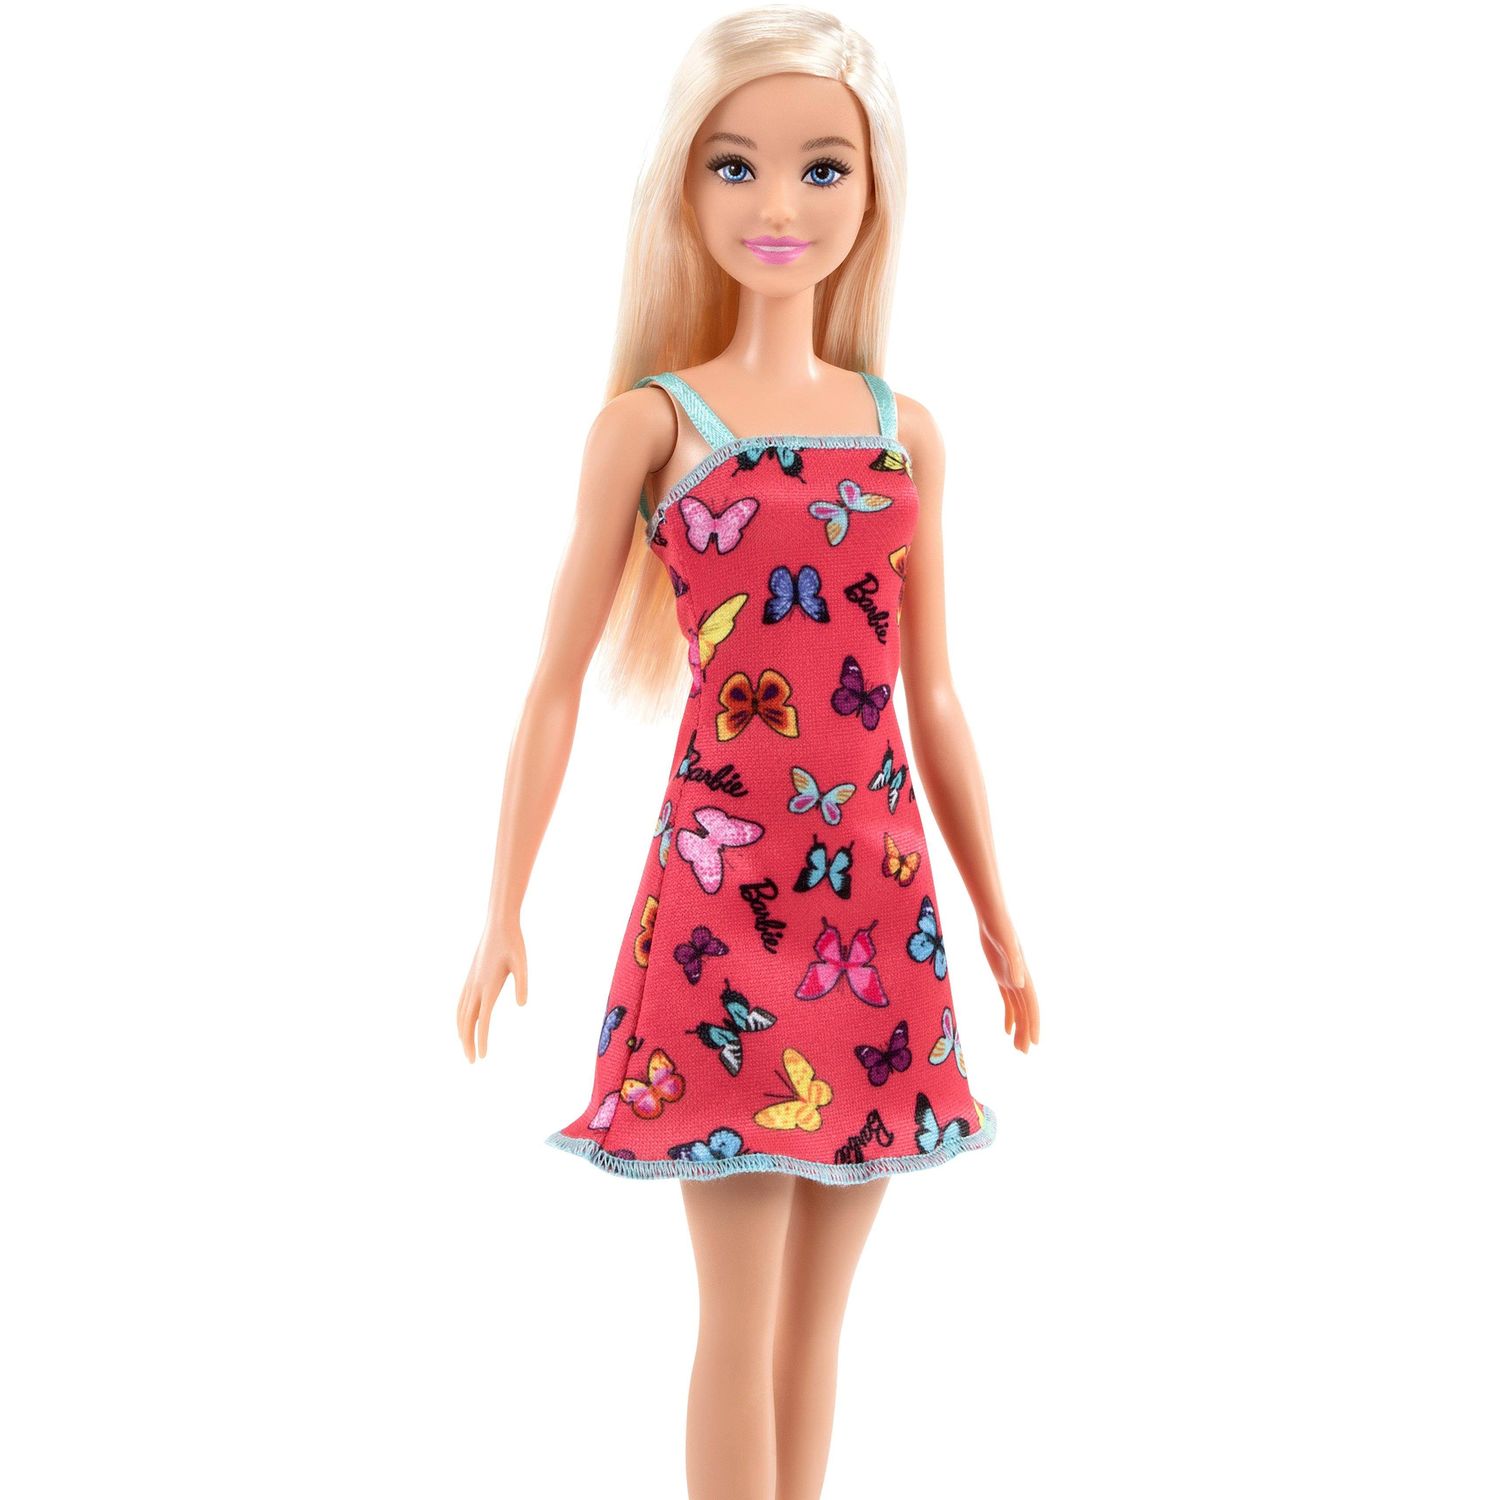 Кукла Barbie Супер стиль Блондинка в розовом платье (T7439) - фото 2